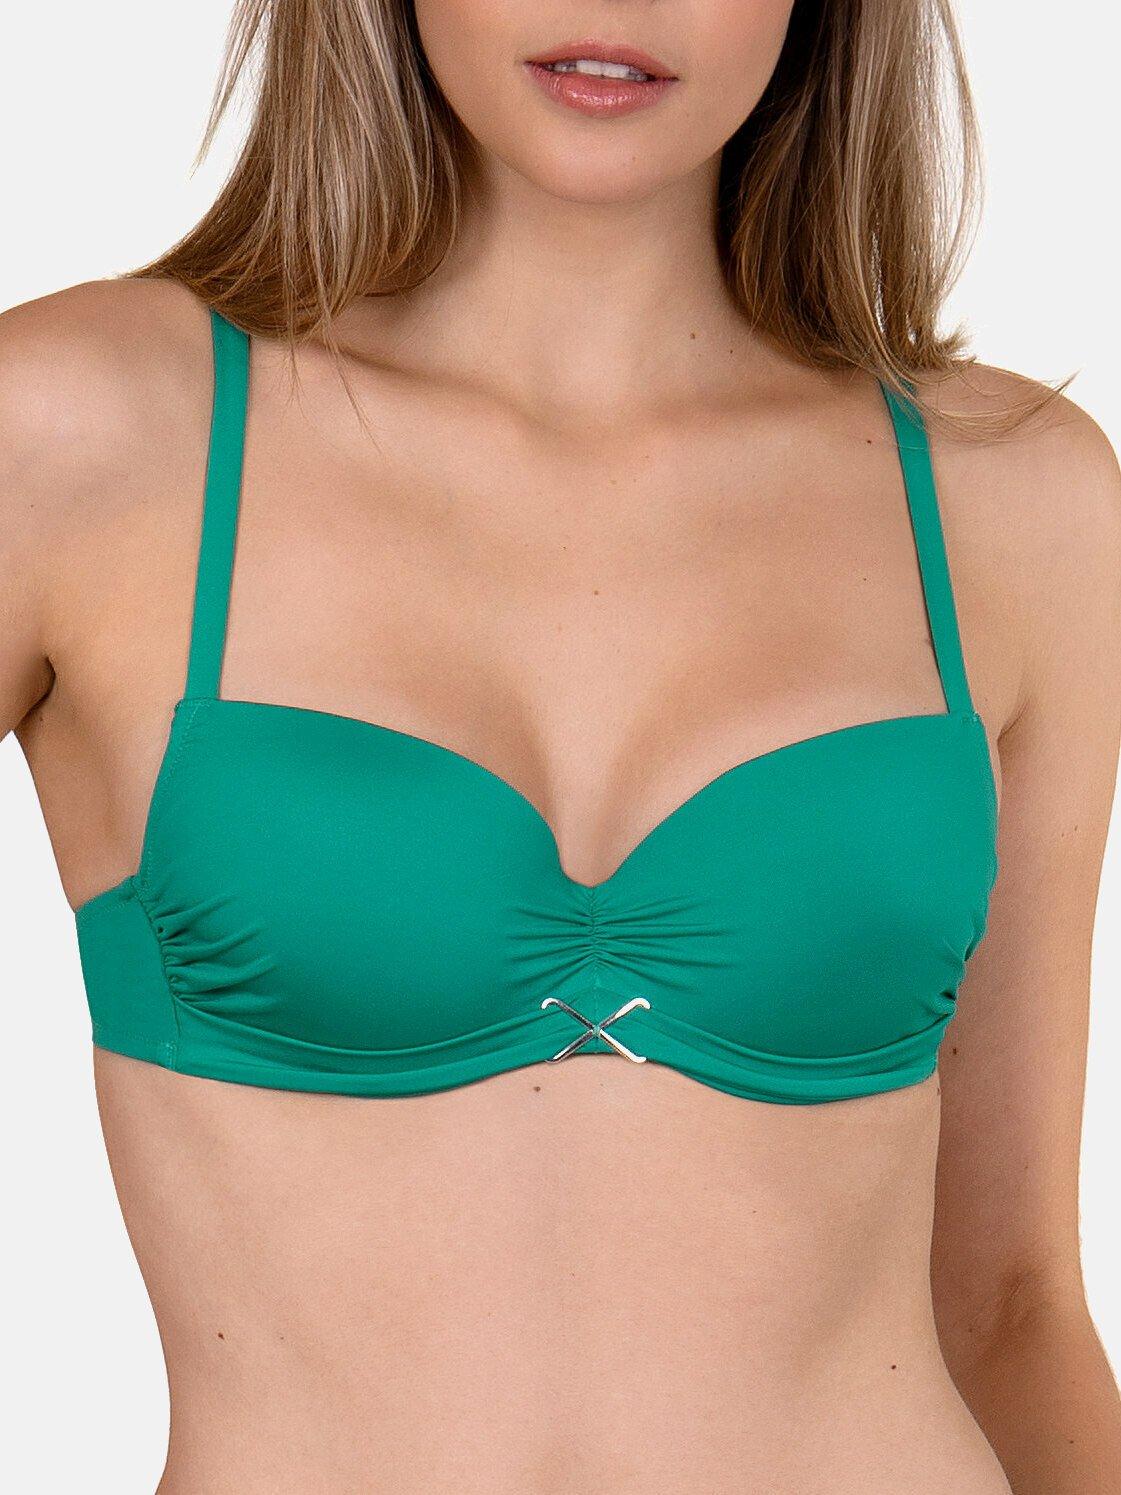 Bikini-oberteil Vorgeformt Gran Canaria Damen Grün B/38 von Lisca